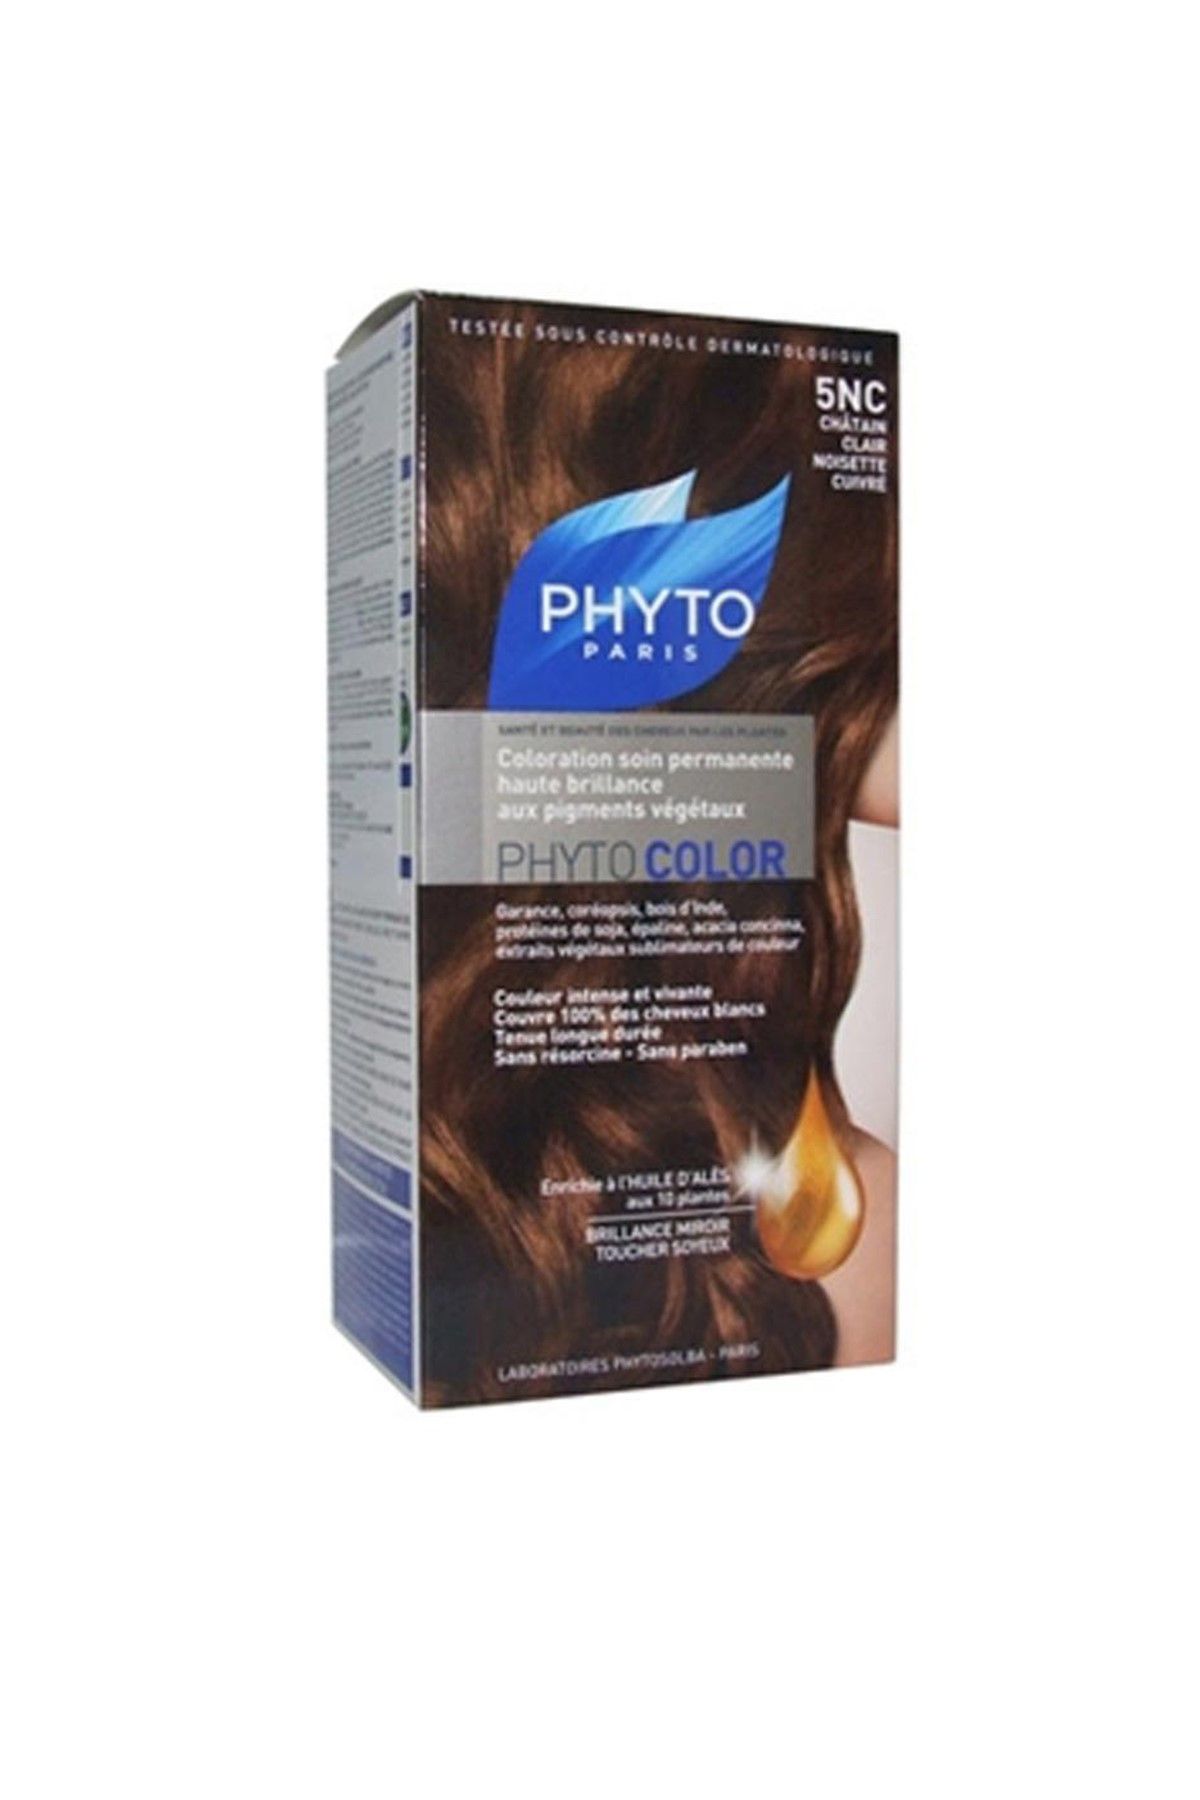 Phyto Açık Bakır Kestane Saç Boyası - Phytocolor 5NC Kit 3338221000316